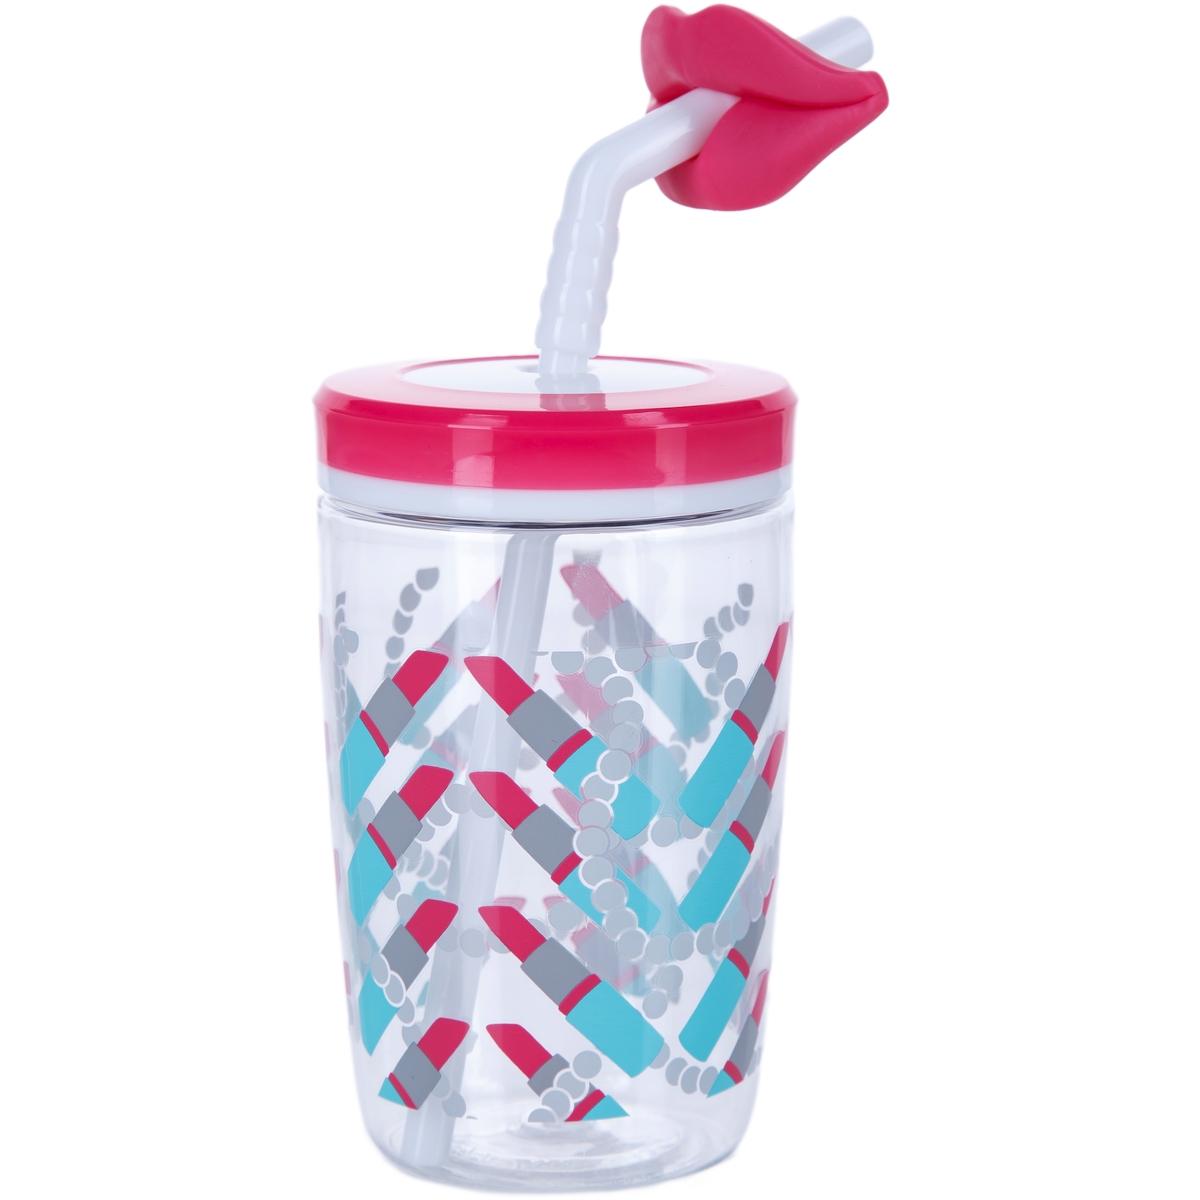 Детский стакан с соломинкой Funny straw Cherry blossom Lips, 0.47 л (Contigo CONTIGO0522)